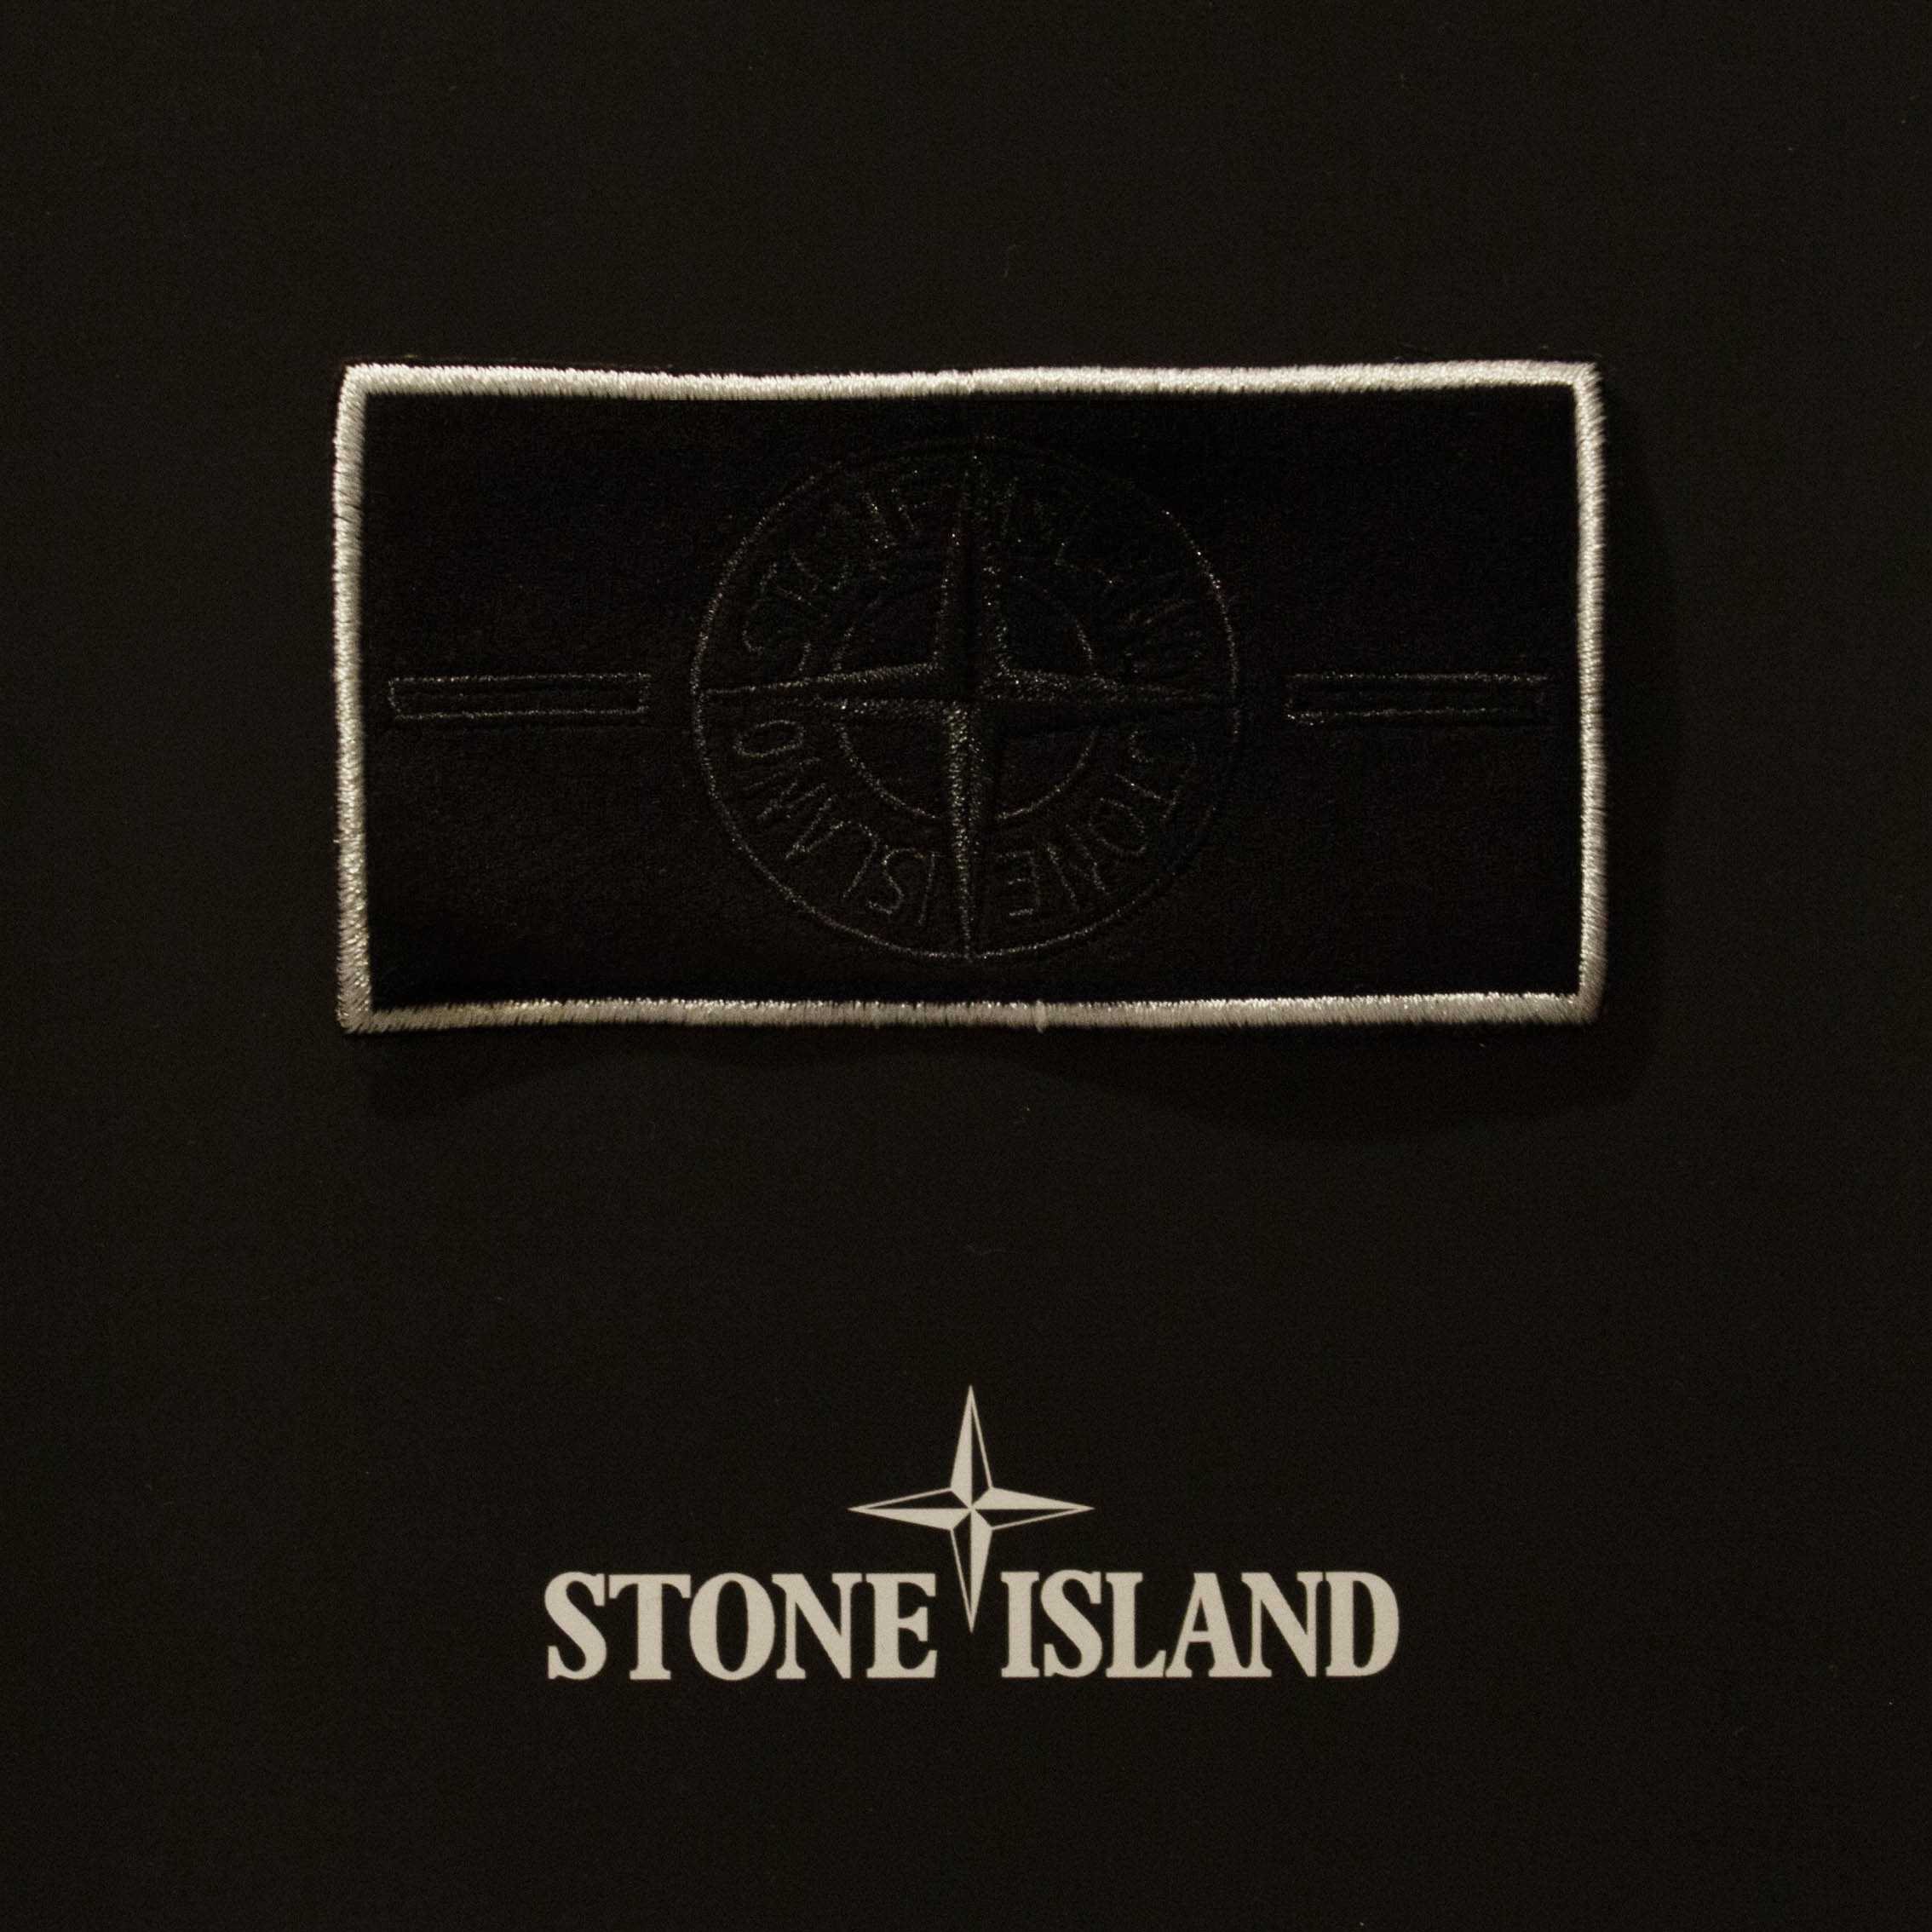 Stone island оригинал: как определить подделку самостоятельно, осмотр по патчу, где можно наткнуться на реплику